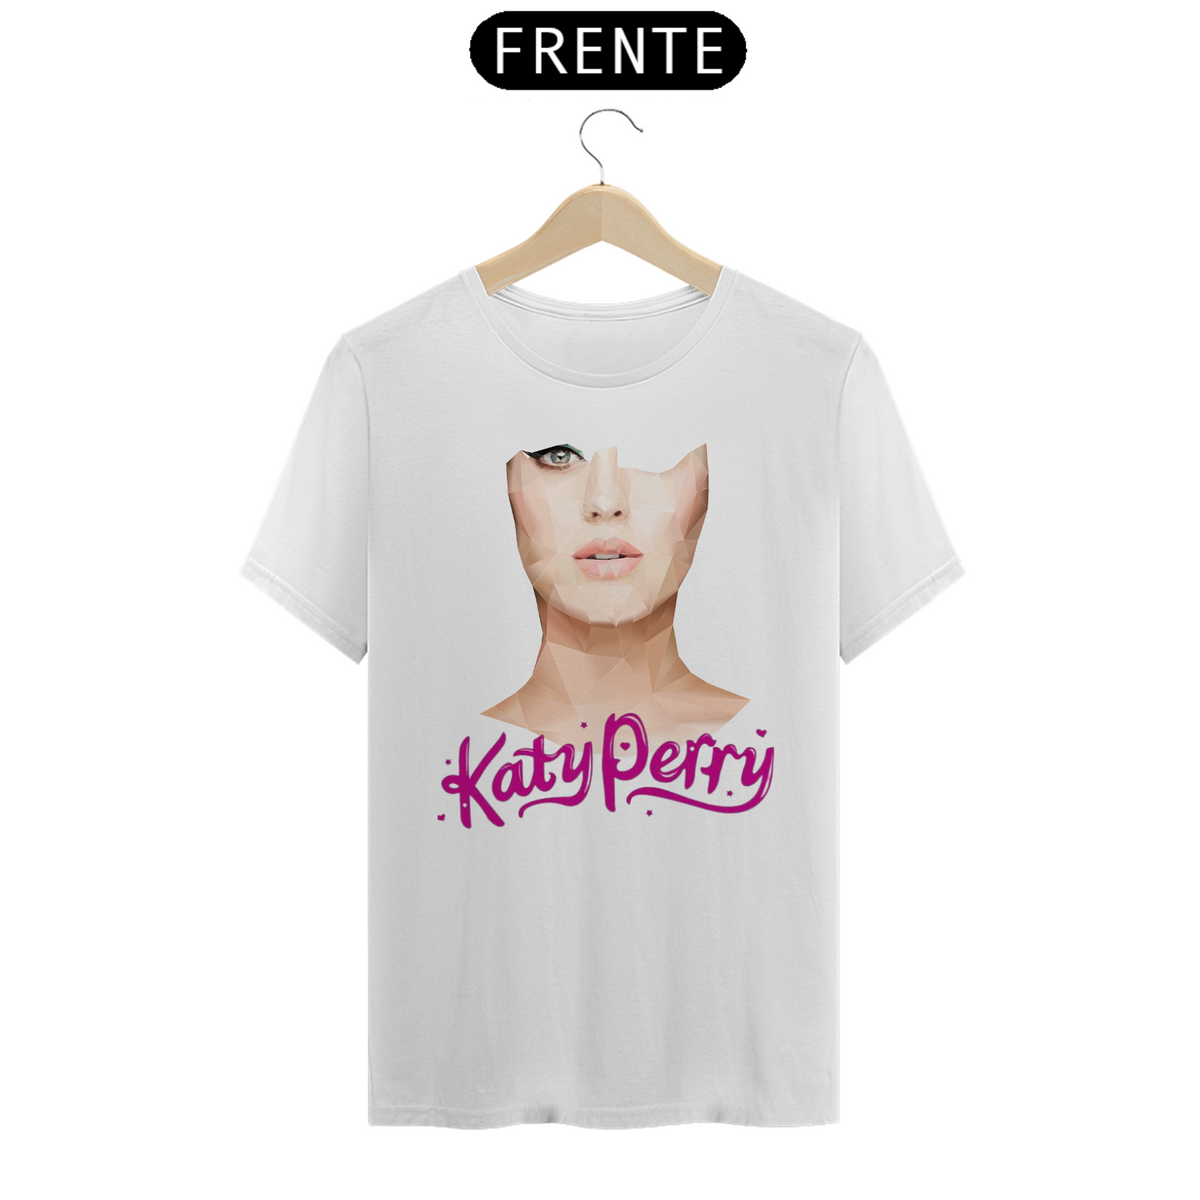 Nome do produto: Katy Perry